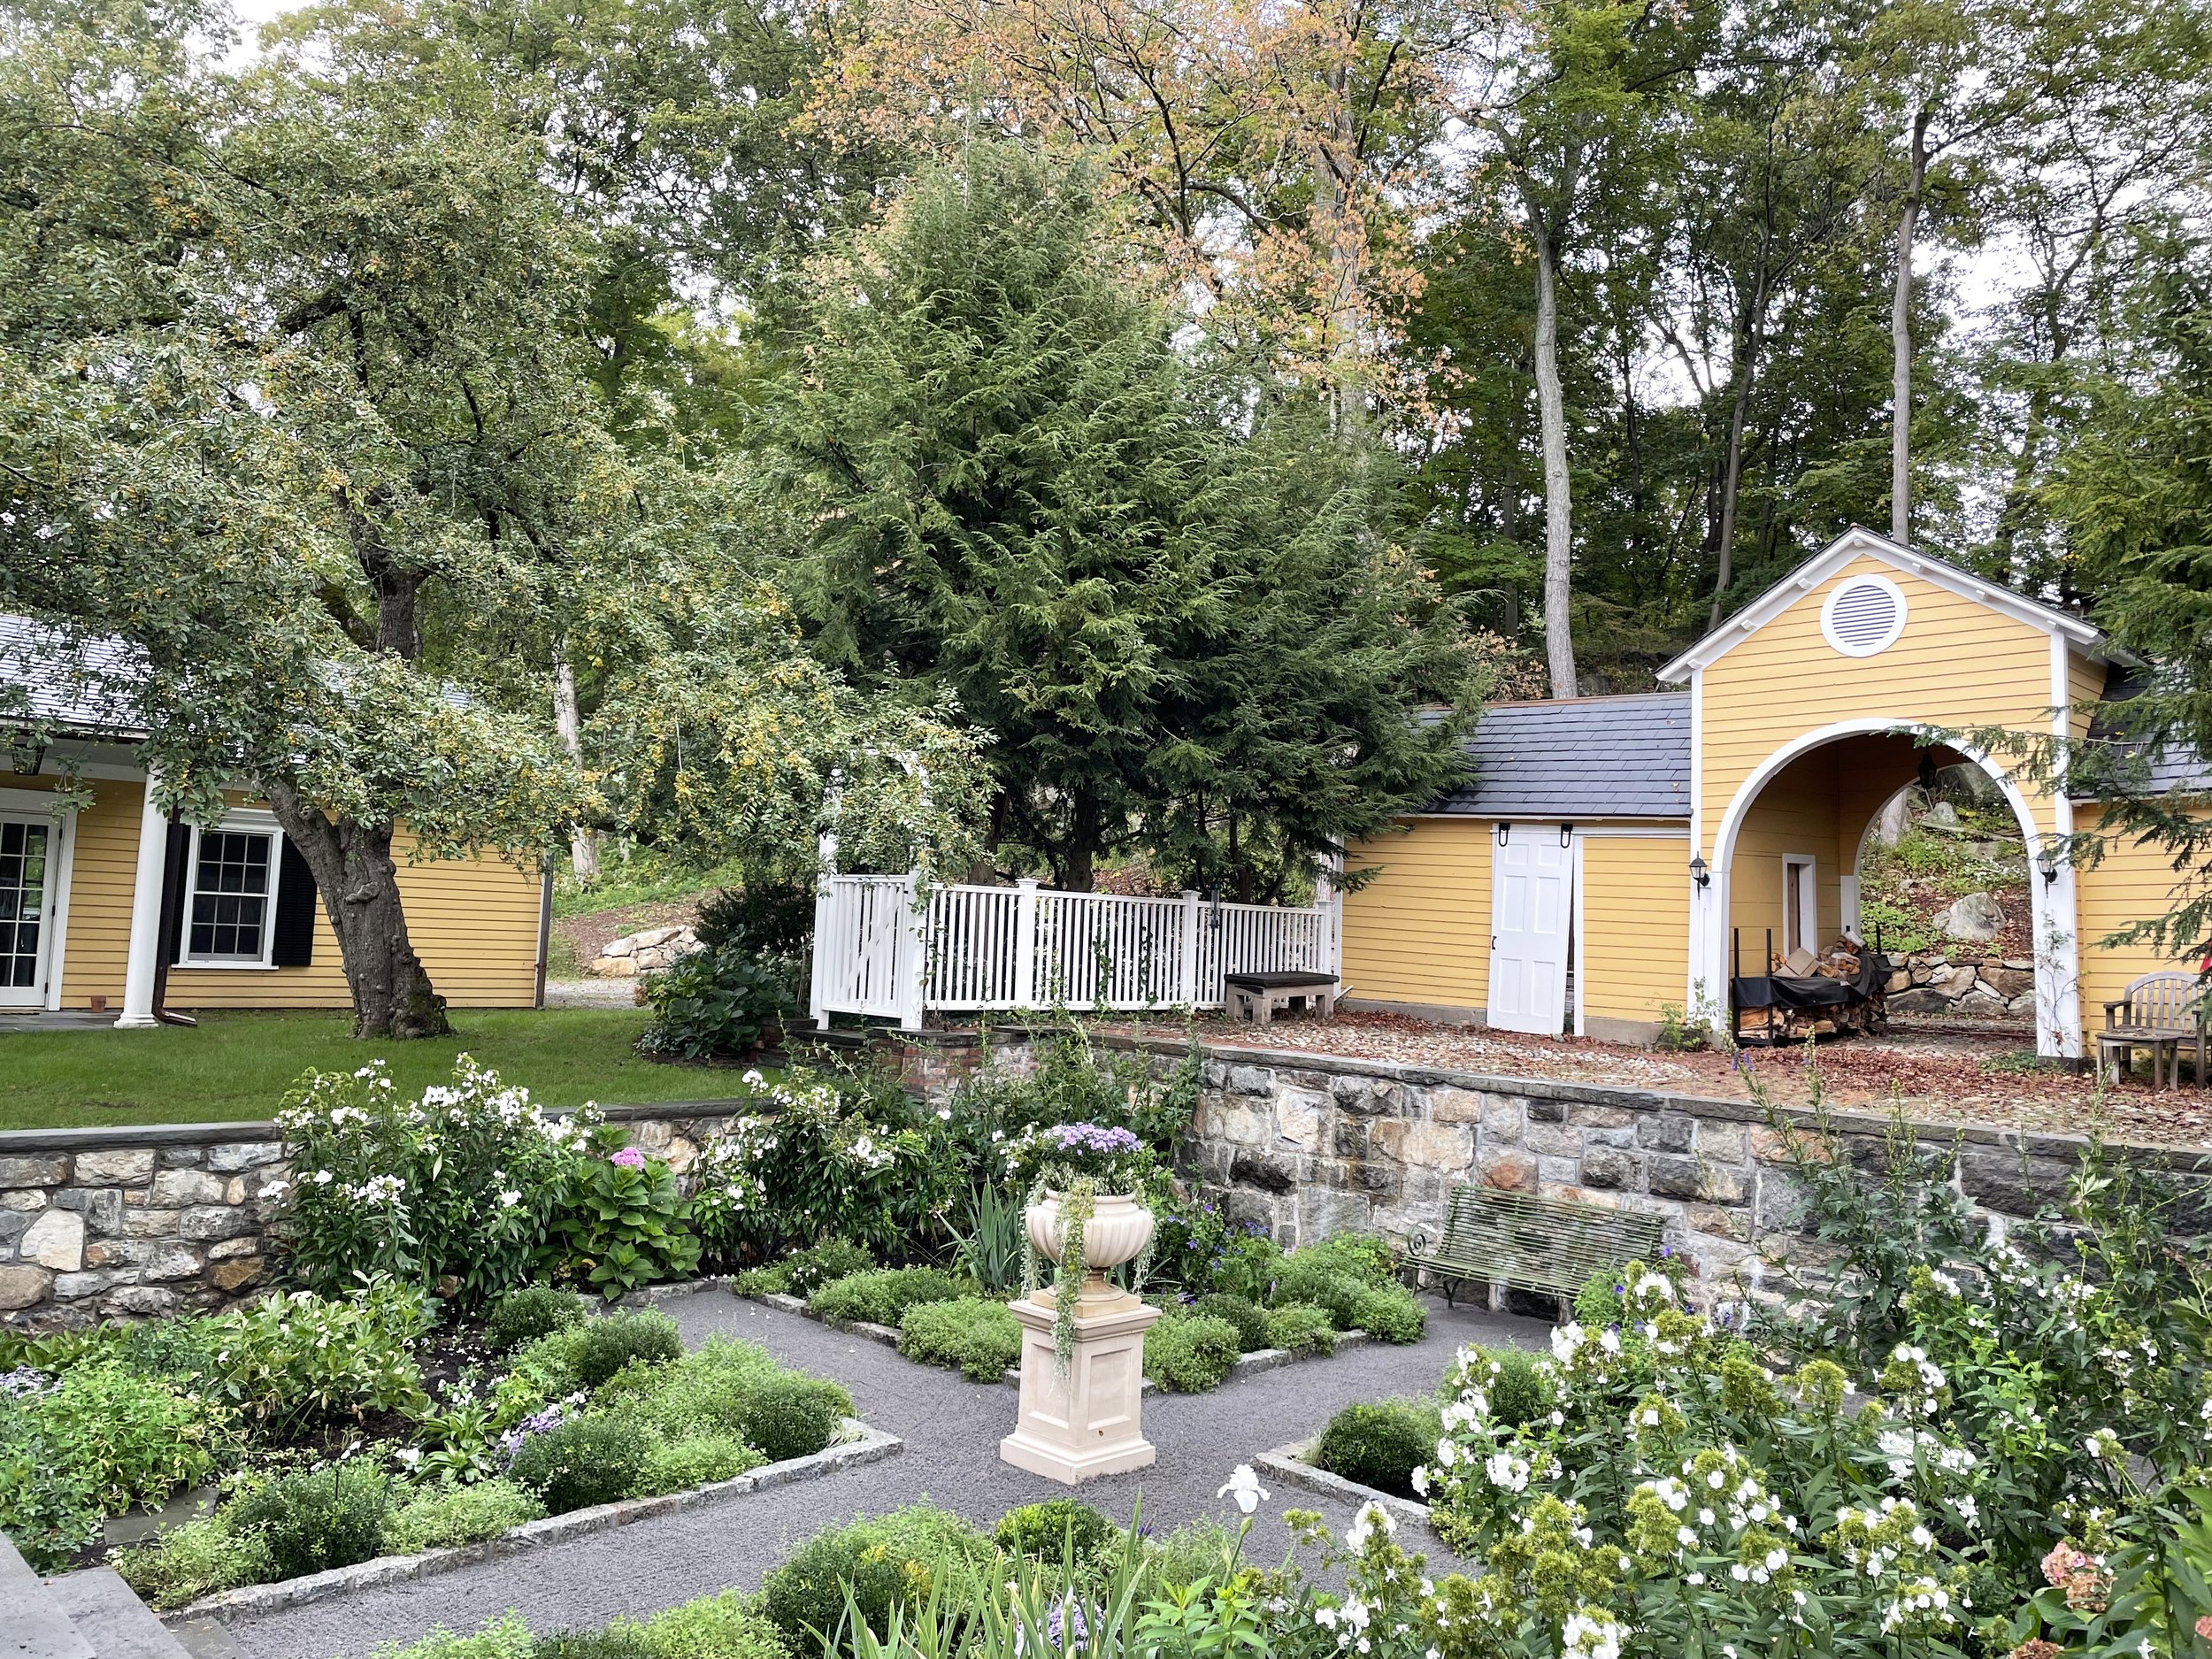 Landscape design for formal perennial garden beds